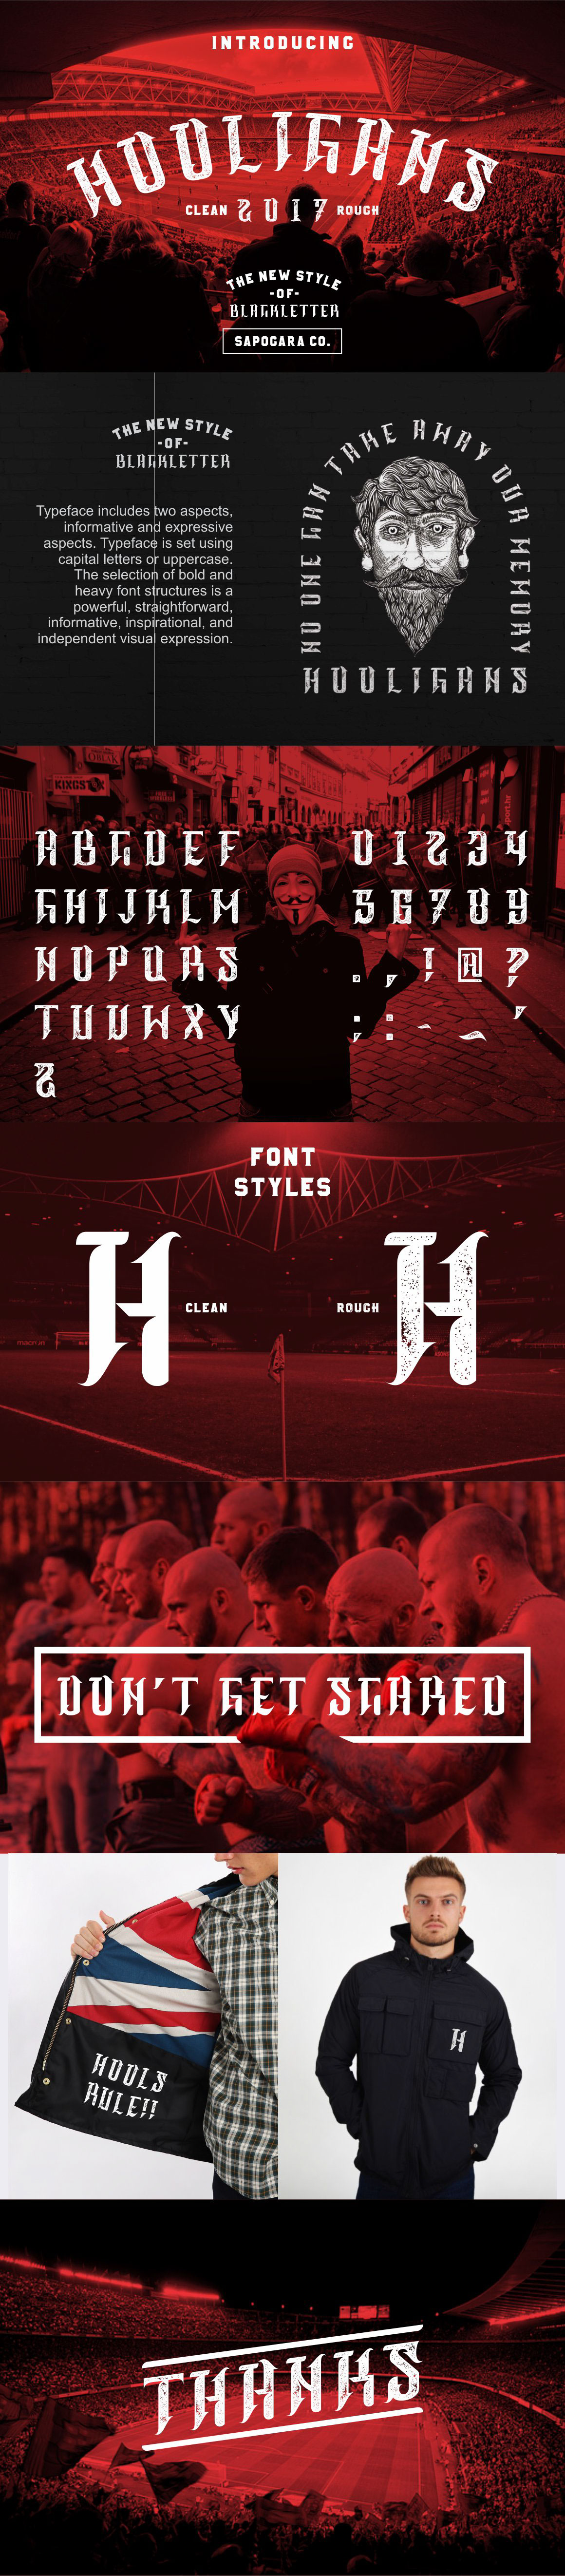 hooligans Blackletter Typeface font football ultras Logotype england OLDENGLAND letter